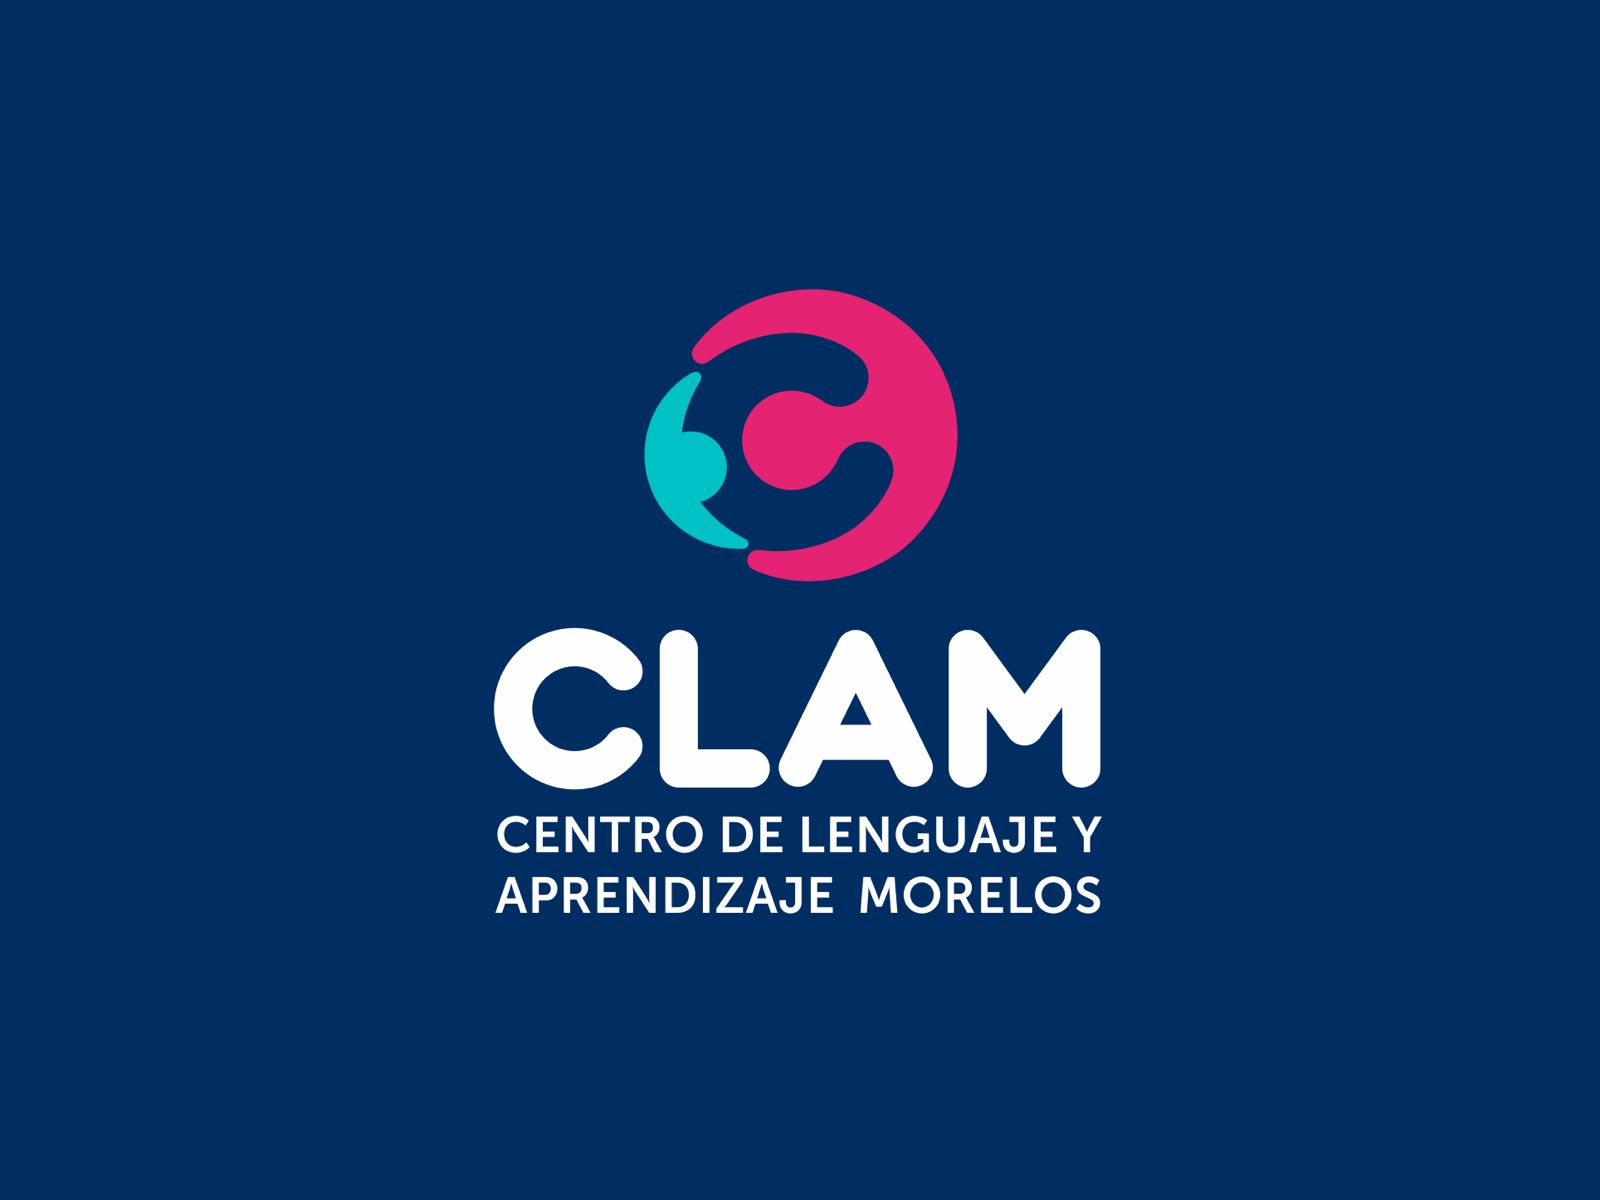 CLAM - Centro de Lenguaje y Aprendizaje Morelos